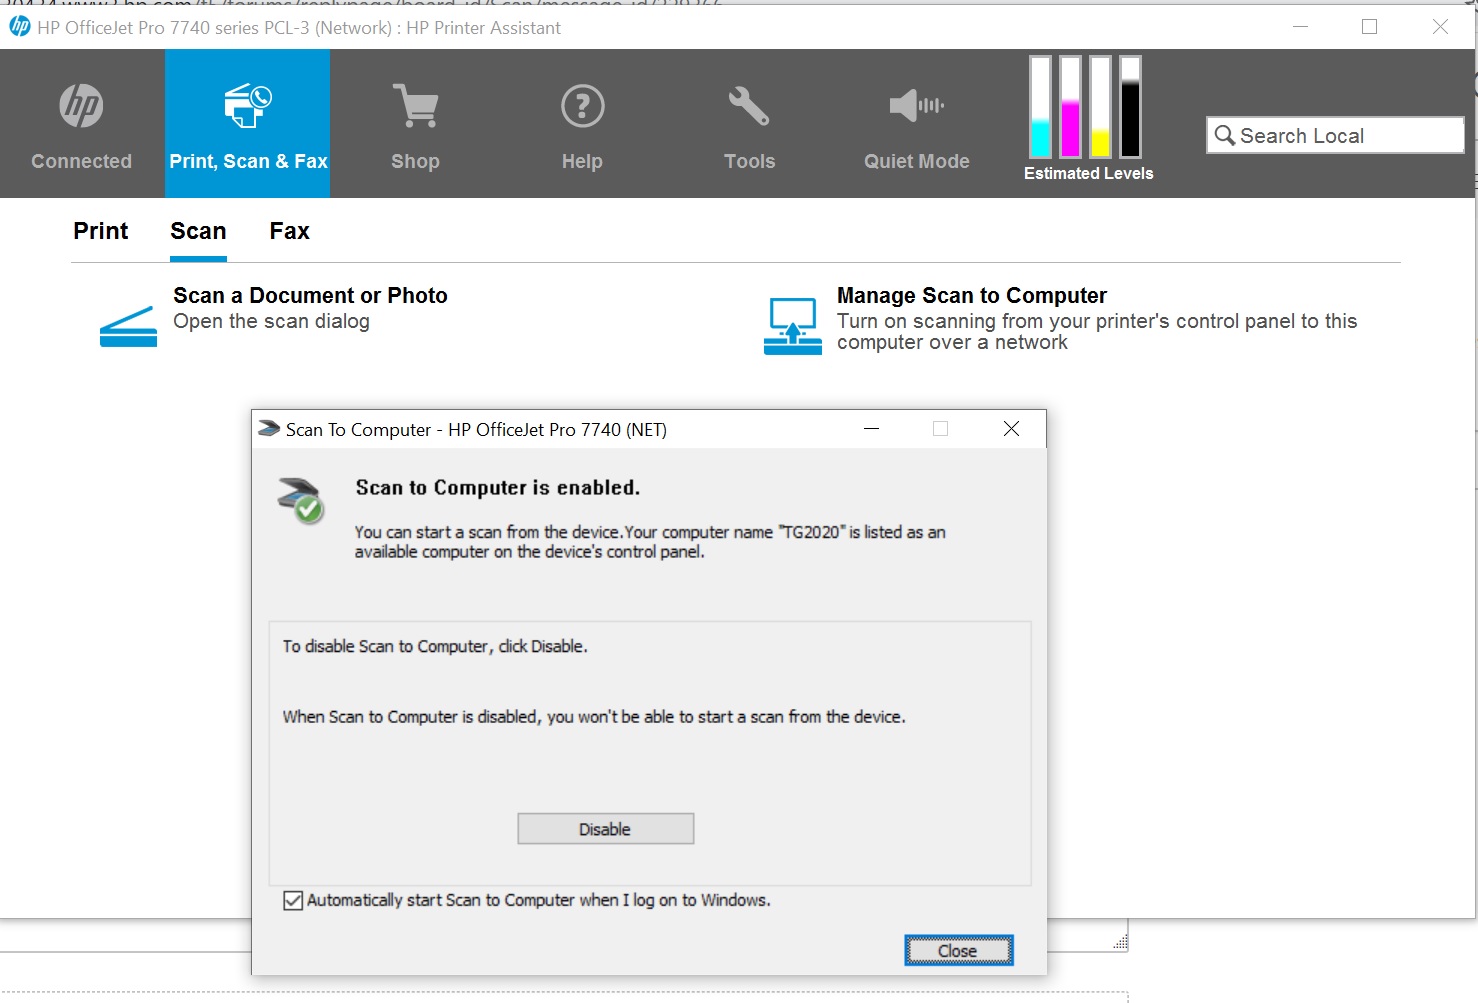 HP OfficeJet Pro 7740 Scan multiple A3